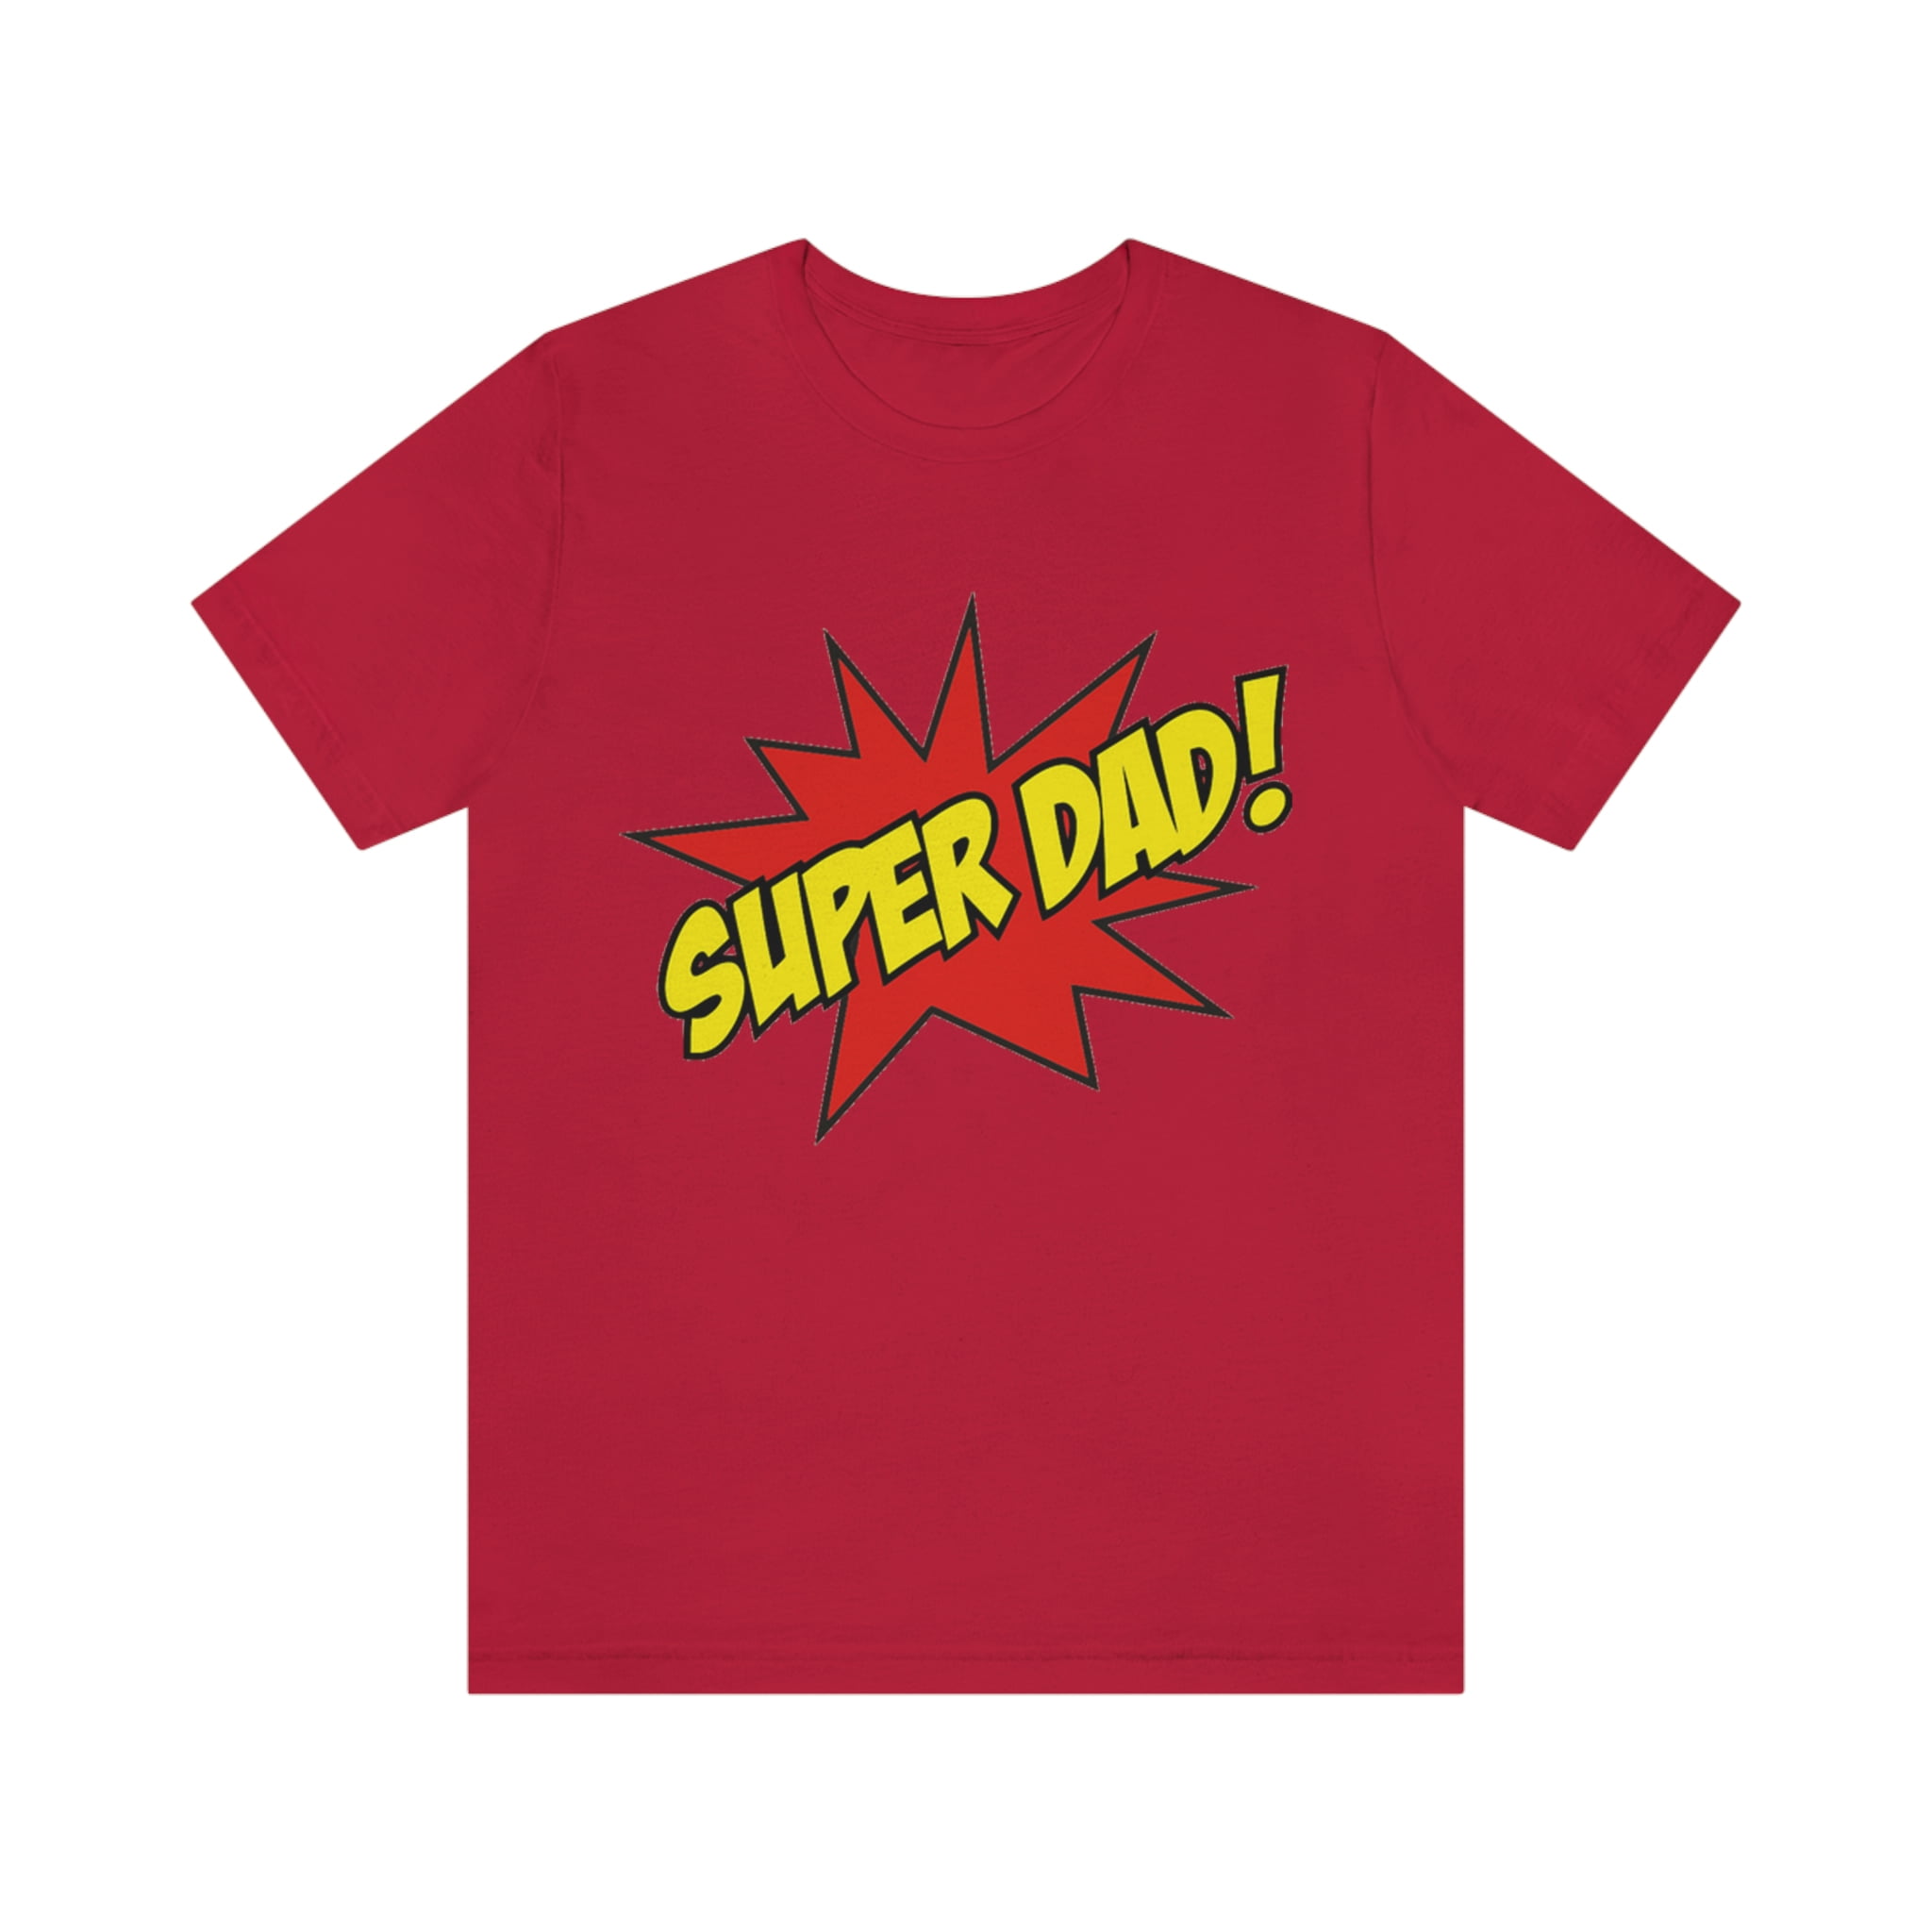 Super Dad Shirt - Walmart.com